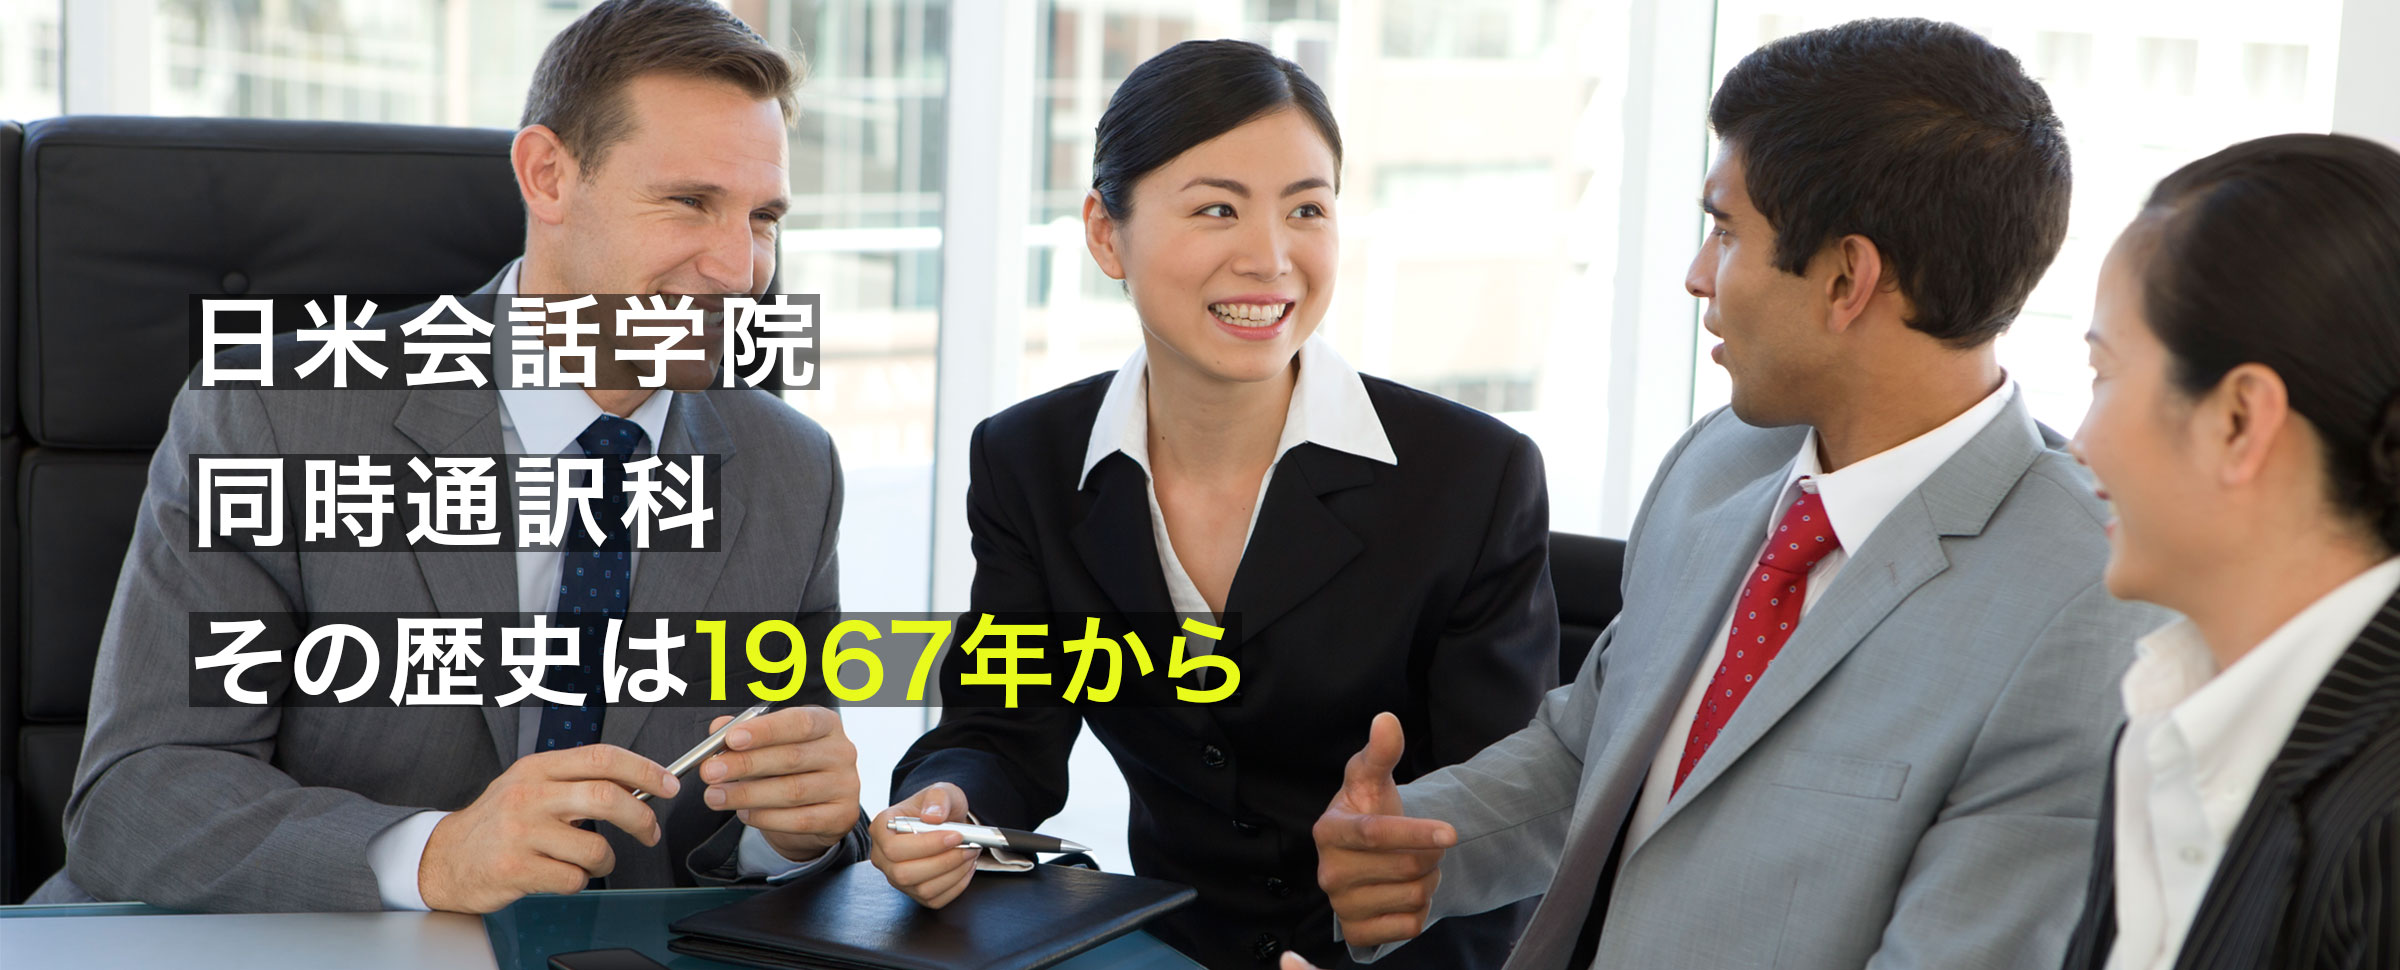 日米会話学院 同時通訳科 その歴史は1967年から